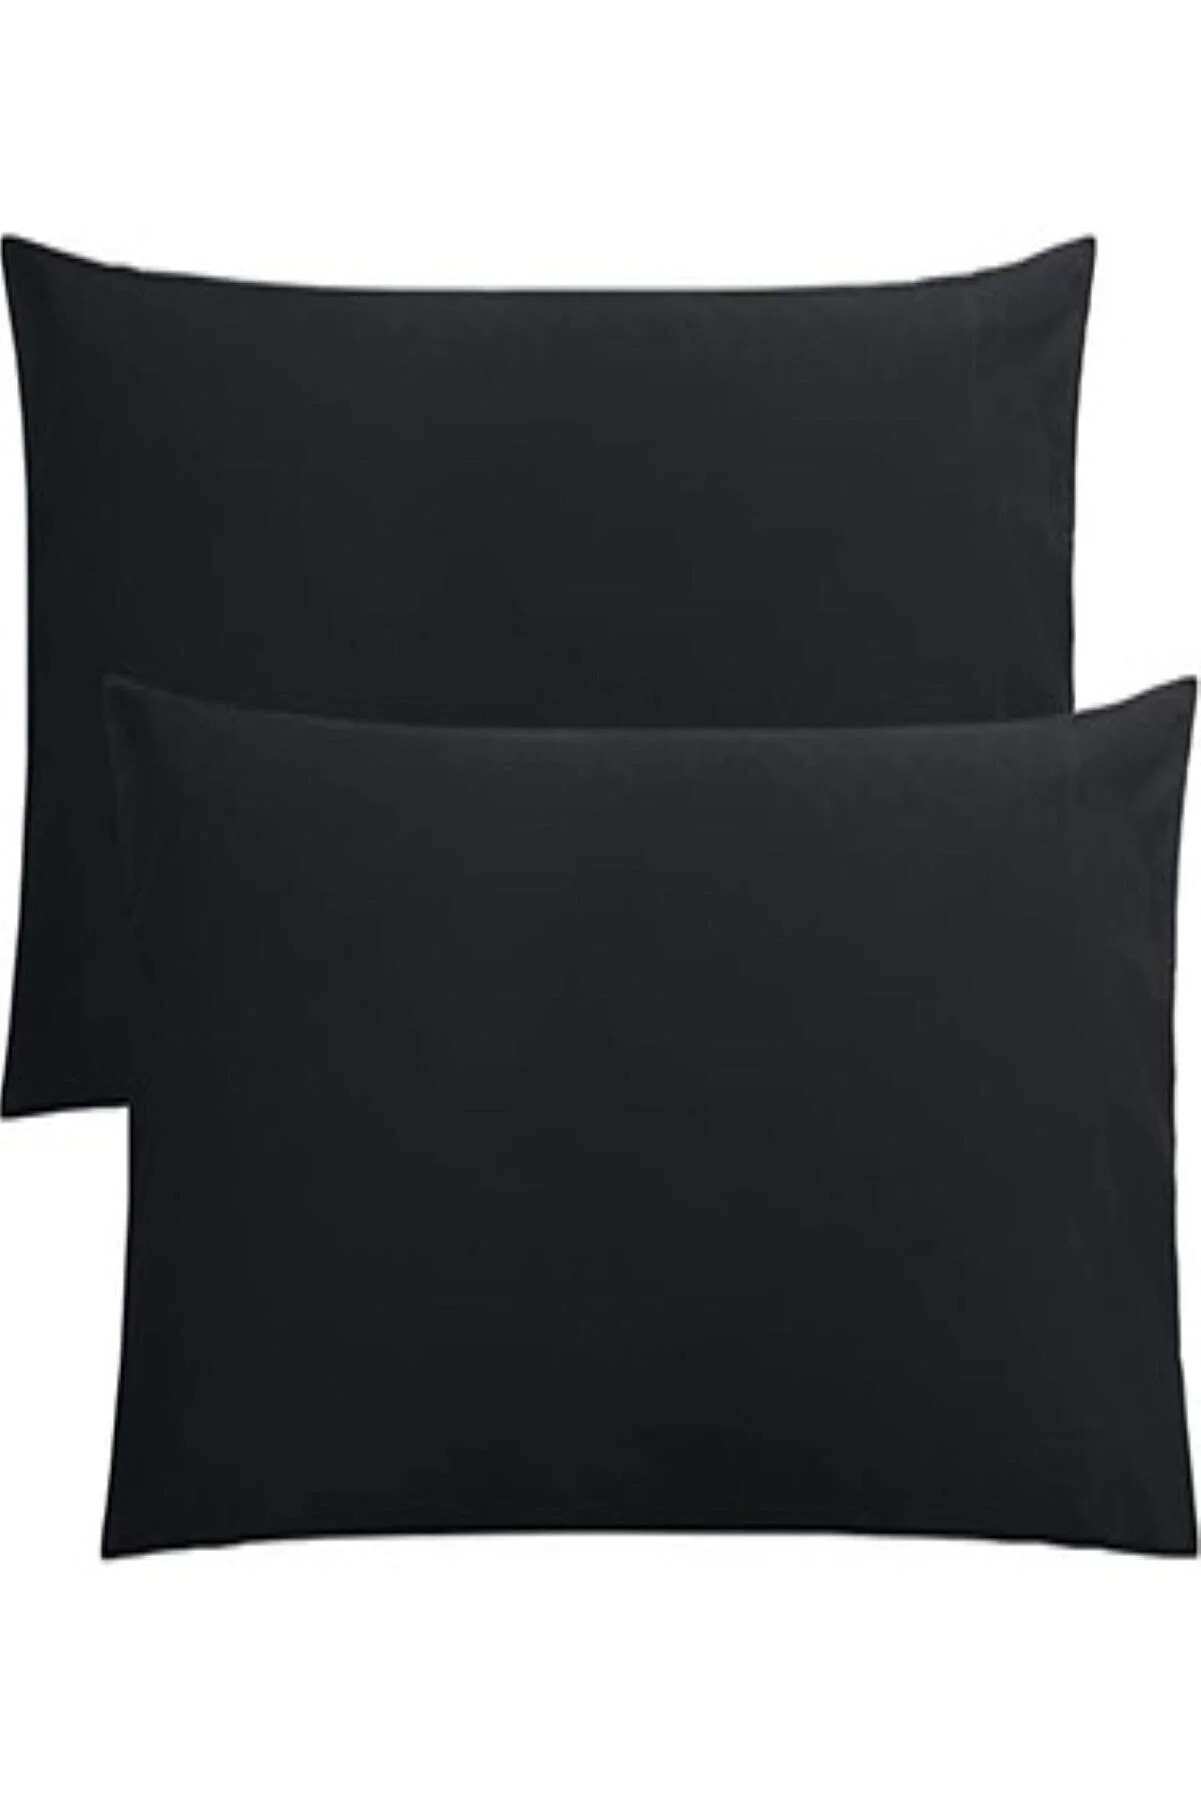 Tinimini Home Pamuklu Fermuarlı 50 x 70 Ebat Yastık Kılıfı | 2 Adet - Siyah